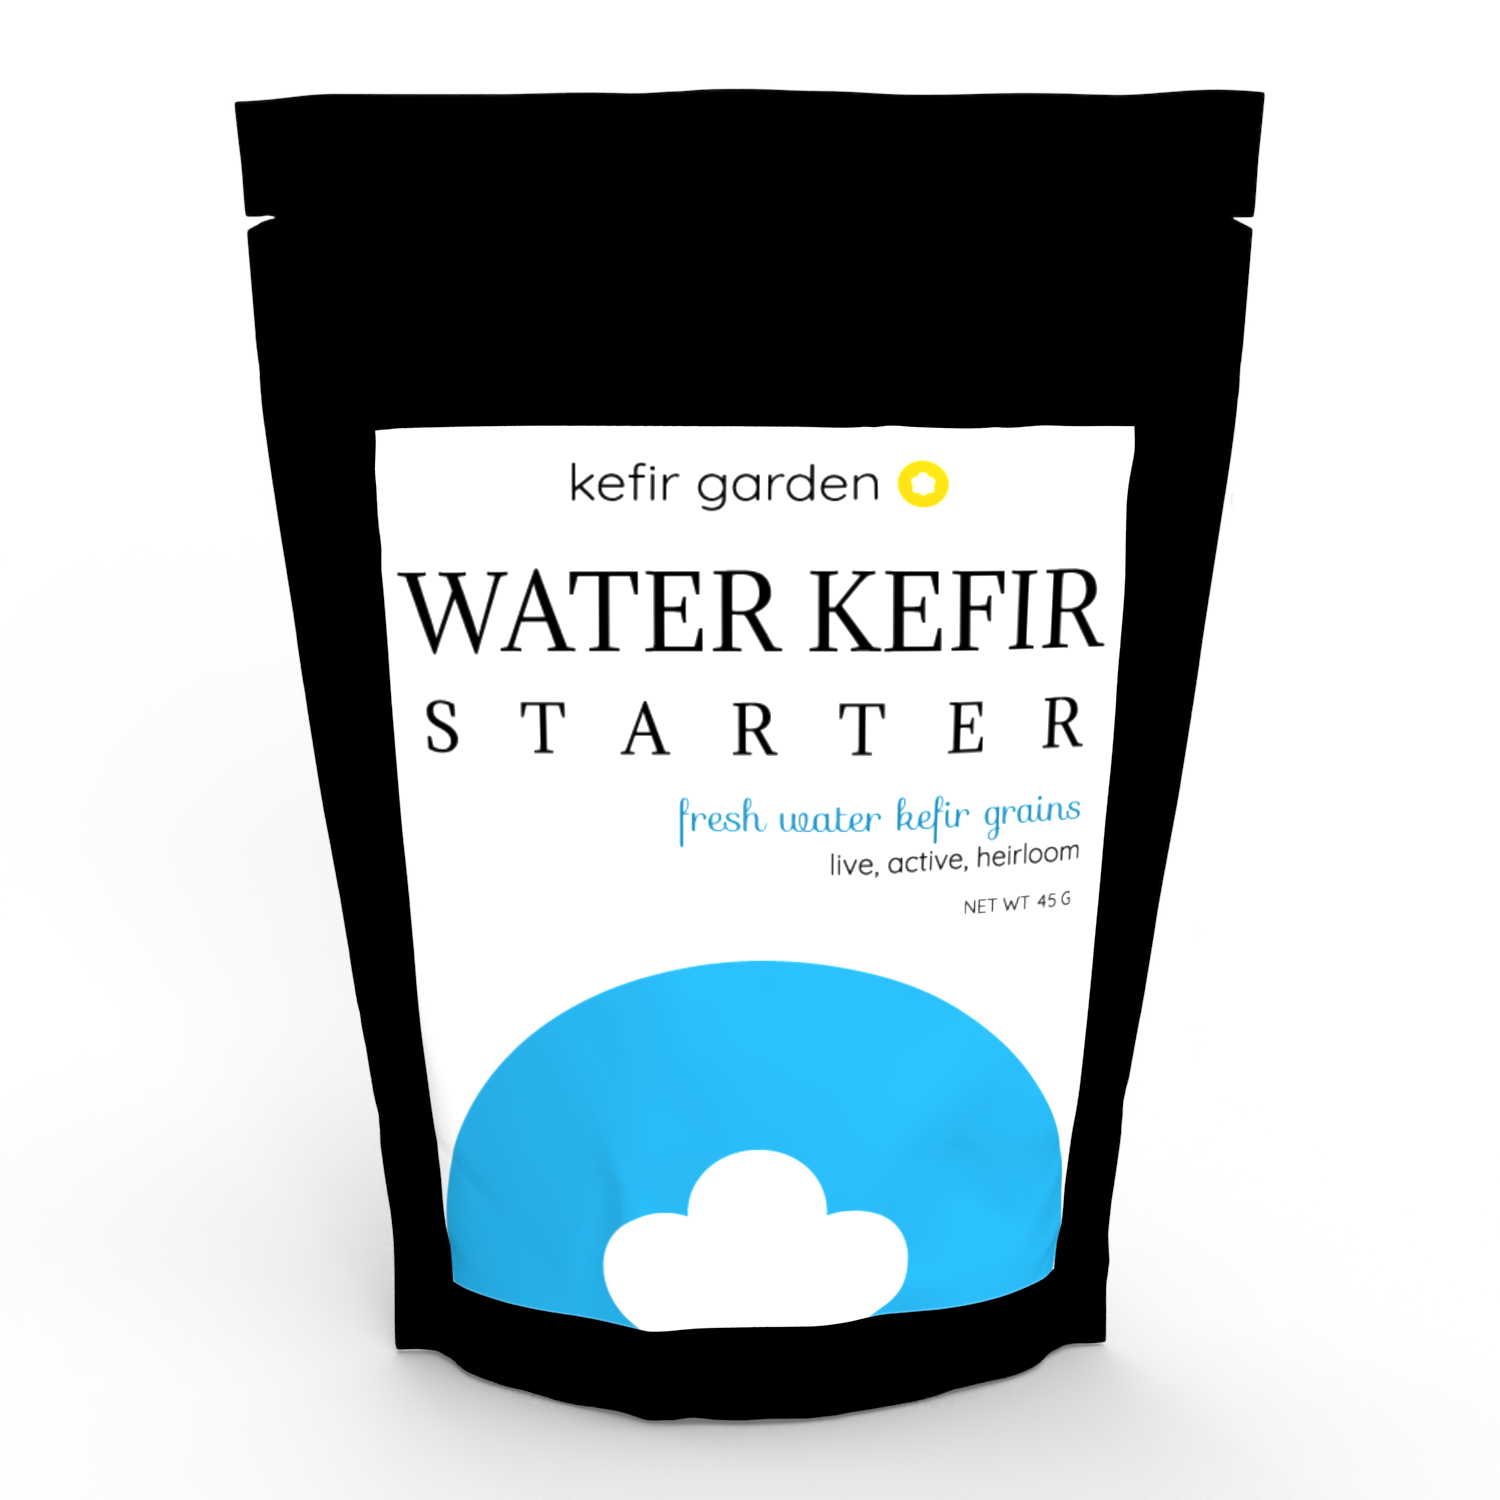 Packaging of Water kefir grains. Front side.